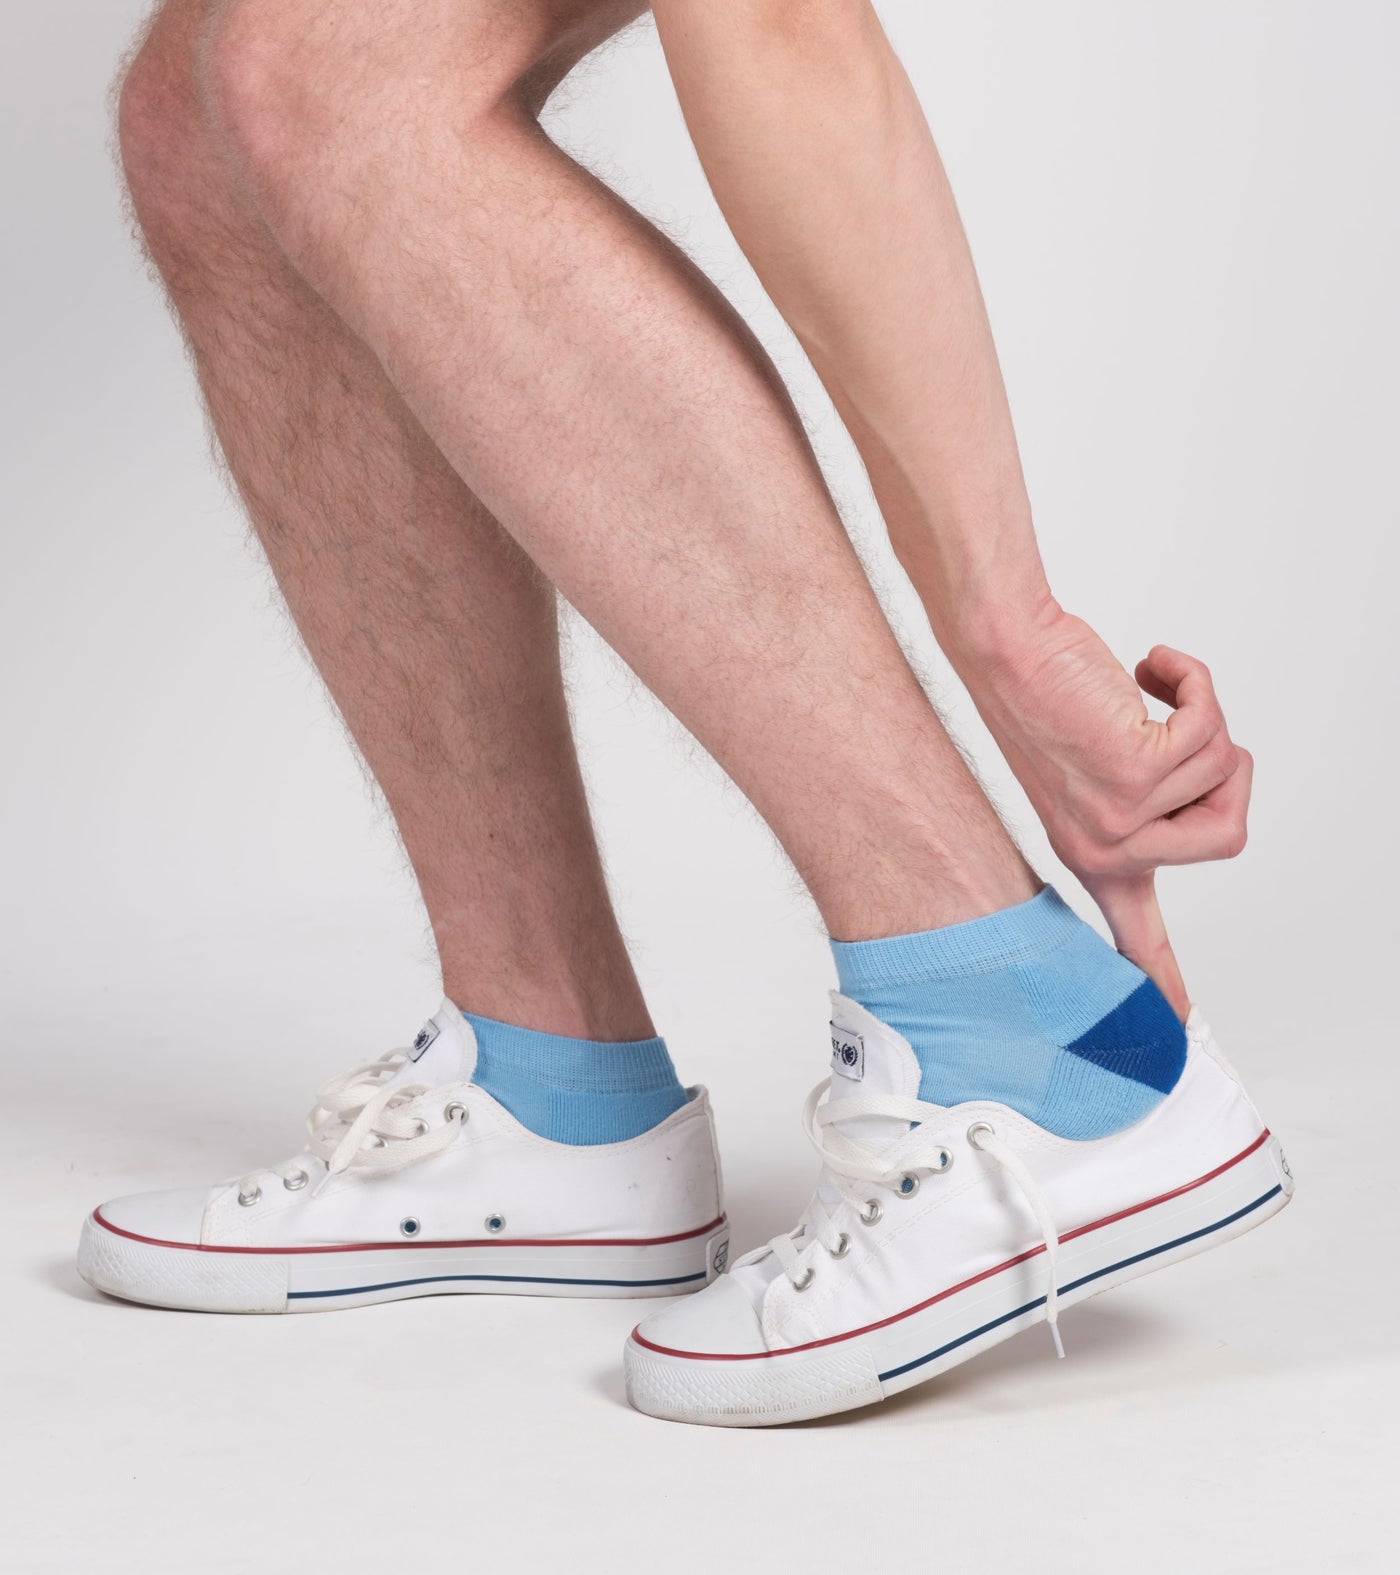 Kayapo Men's Ankle Socks